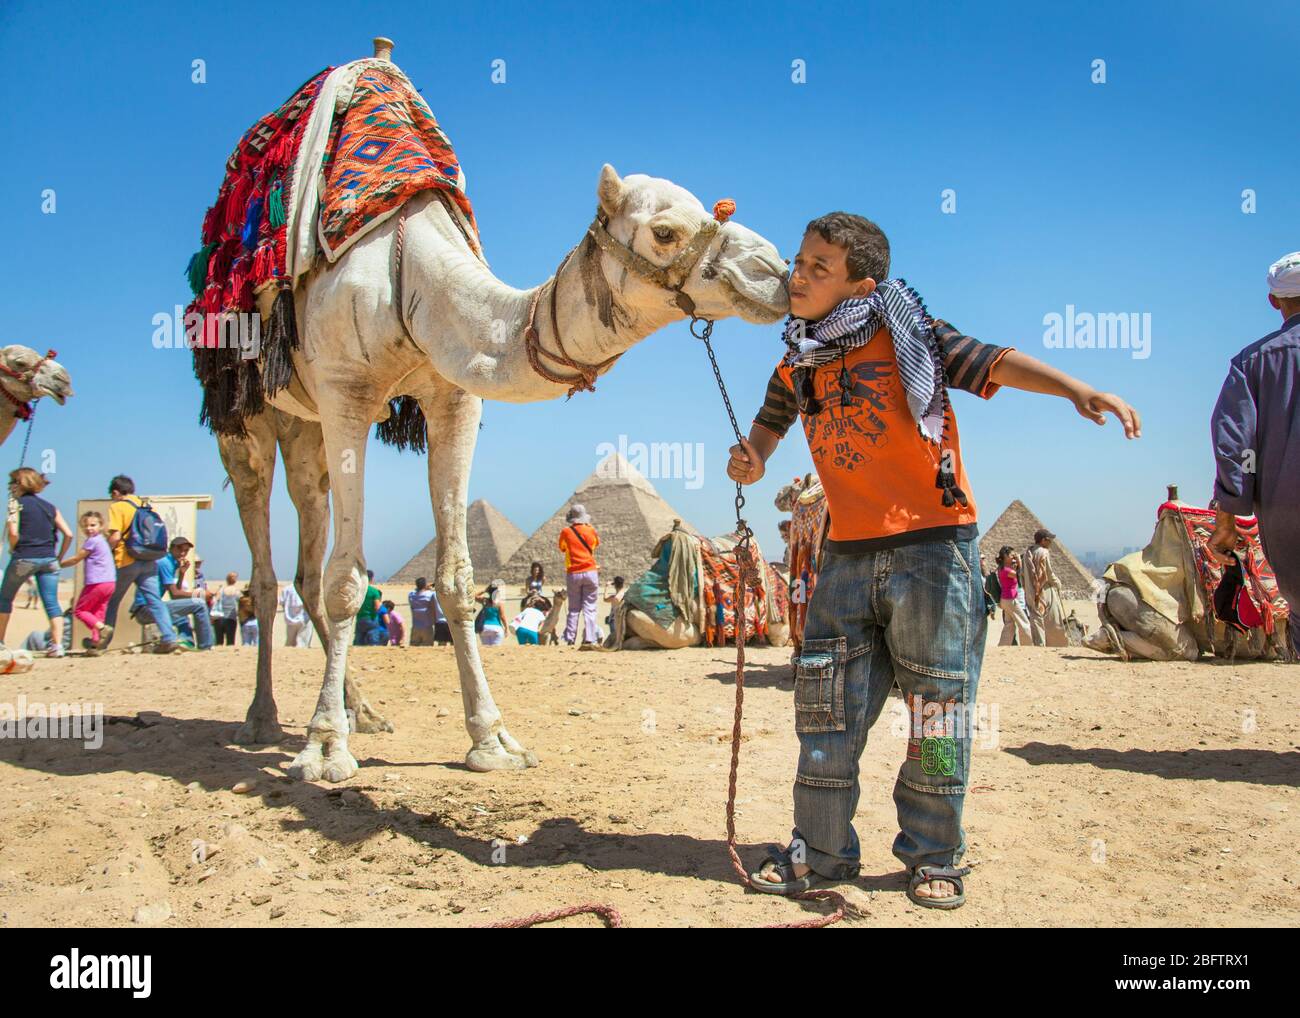 Un niño egipcio besa un camello en las pirámides de Giza, Egipto Foto de stock